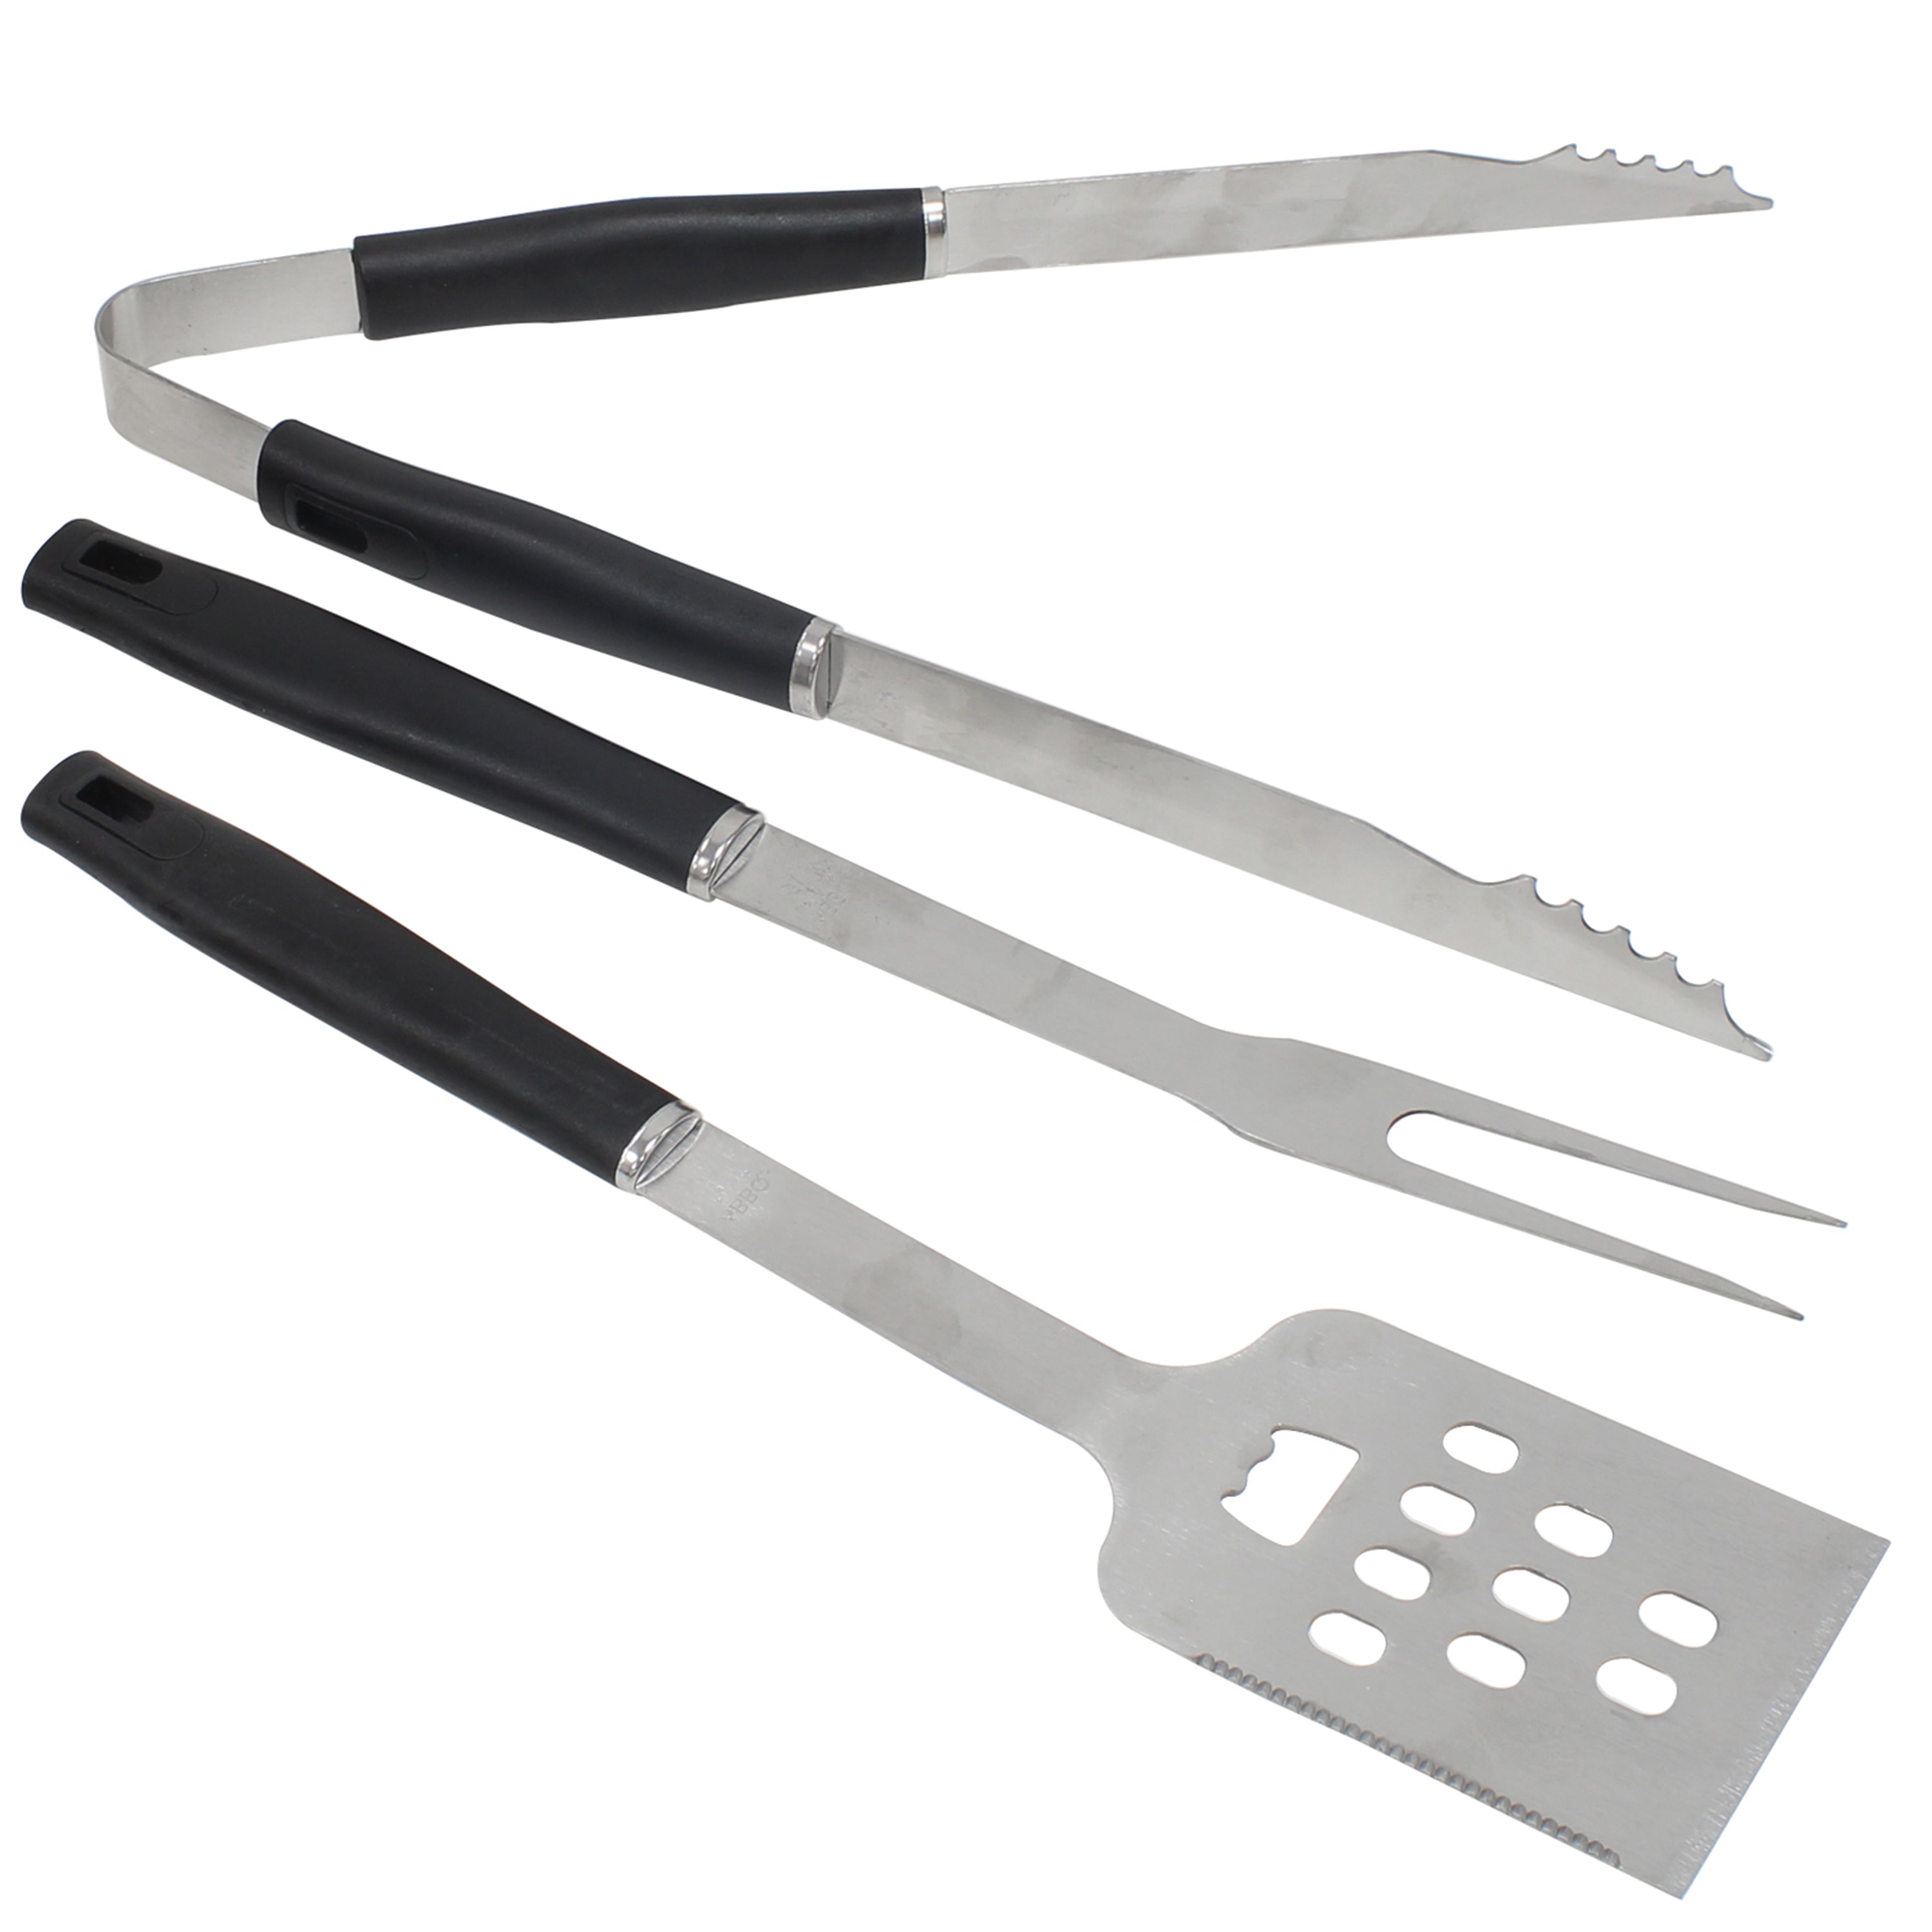 Ensemble de 3 outils Braai - Fourchette, pince et spatule en acier inoxydable